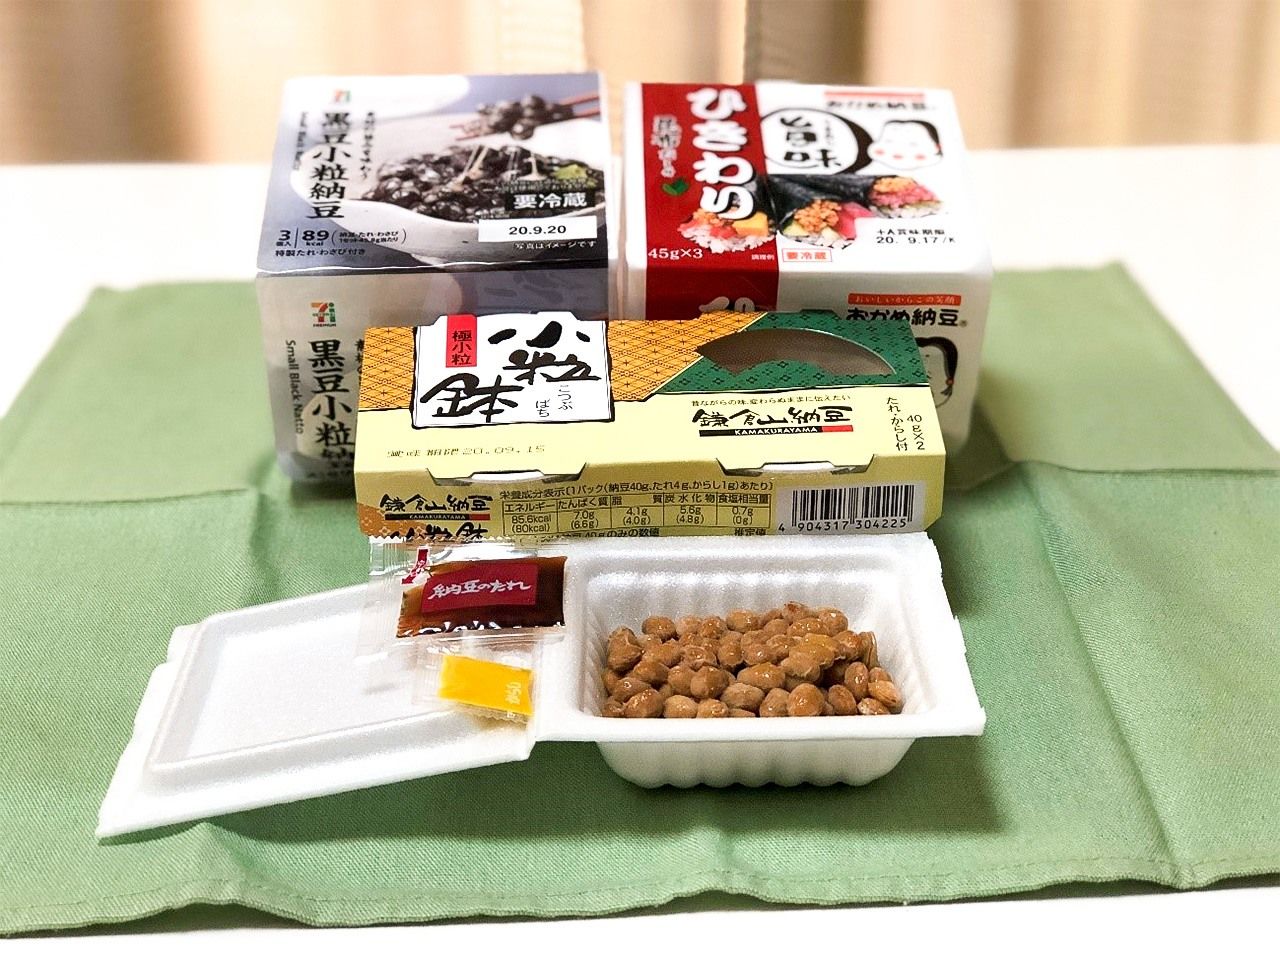 Los tipos de embalaje de nattō incluyen bandejas de poliestireno y vasos de papel.